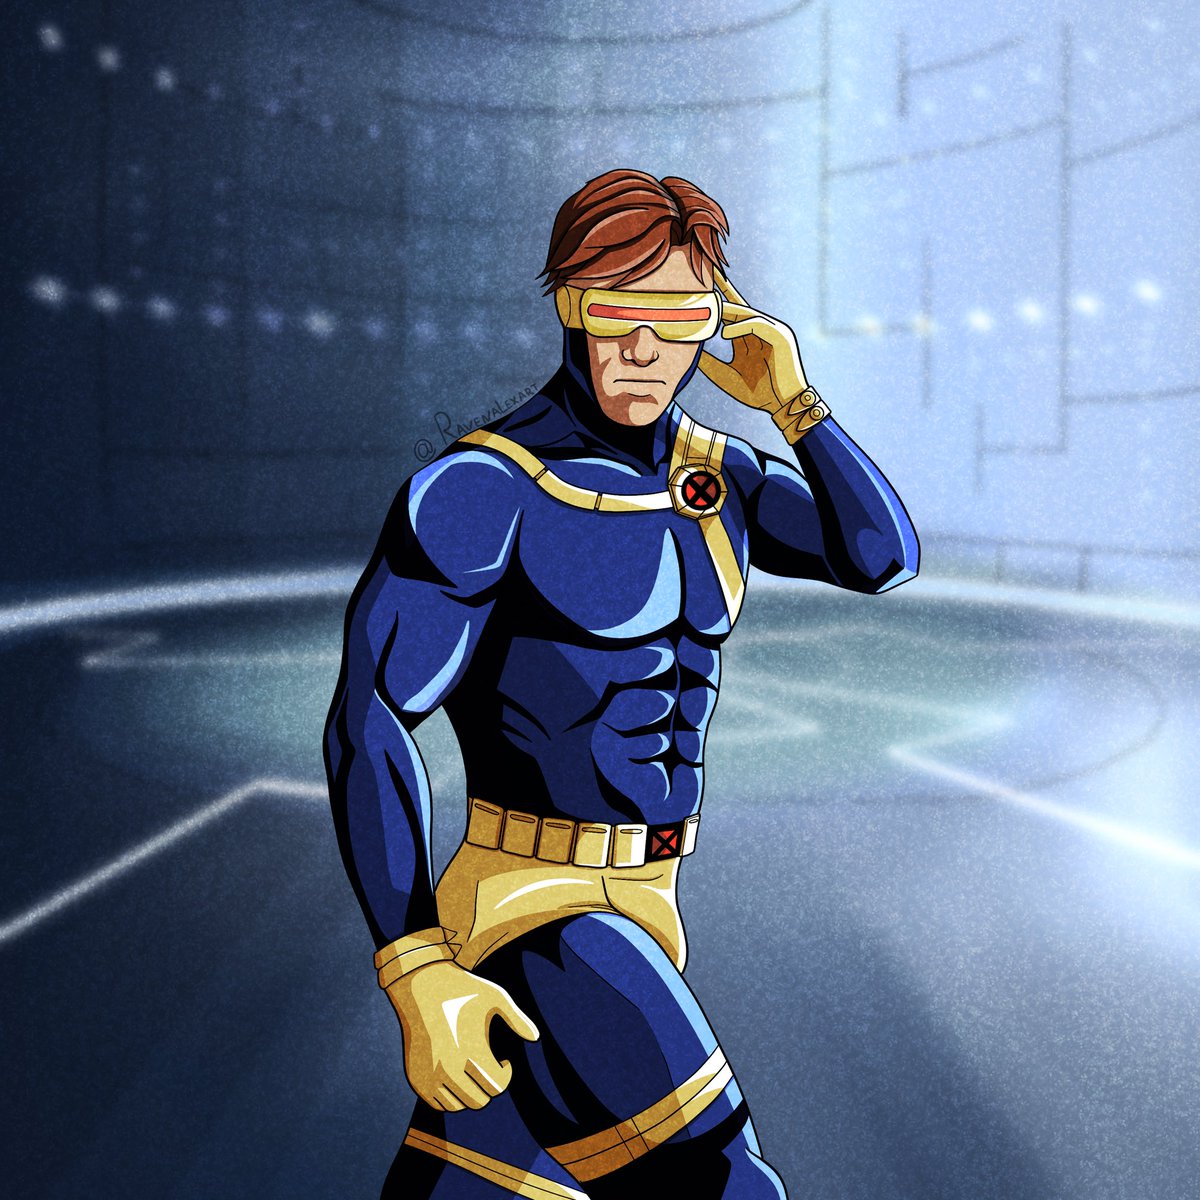 X-men Cyclops ver.1 😎
.
Commissions open 💙
.
#xmen #XMen97 #cyclops #marvel #marvelcomics #marvelstudios #mutant #disneyplus #marveluniverse 
#людиикс #марвел